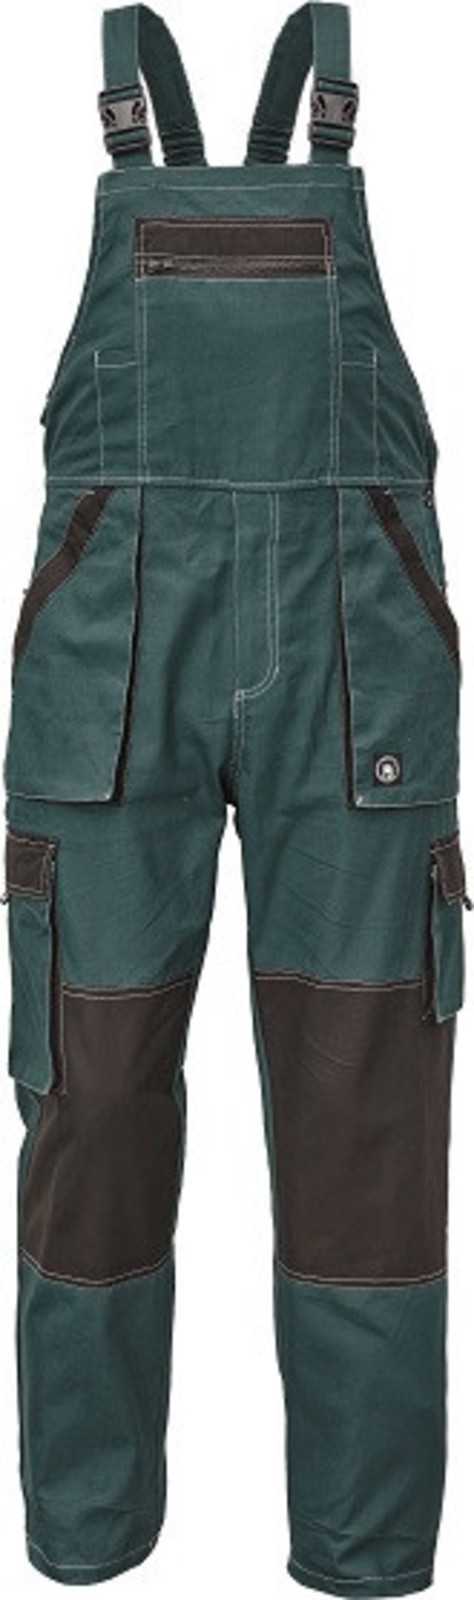 Tenšie bavlnené montérky na traky Max Summer - veľkosť: 52, farba: zelená/čierna